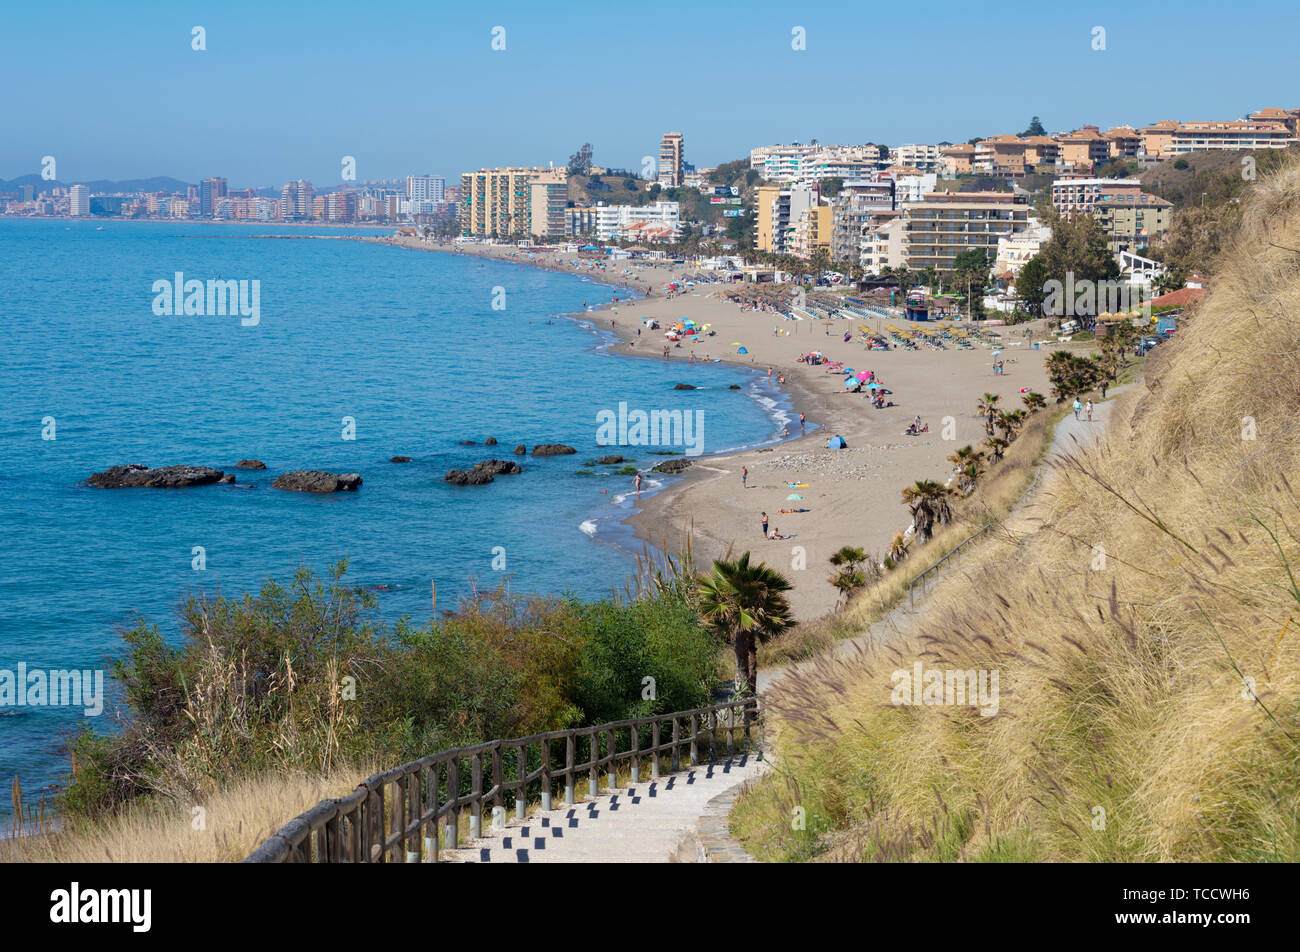 Le fasi che conducono alla spiaggia Carvajal, Carvajal, Costa del Sol, provincia di Malaga, Andalusia, Spagna meridionale. Foto Stock